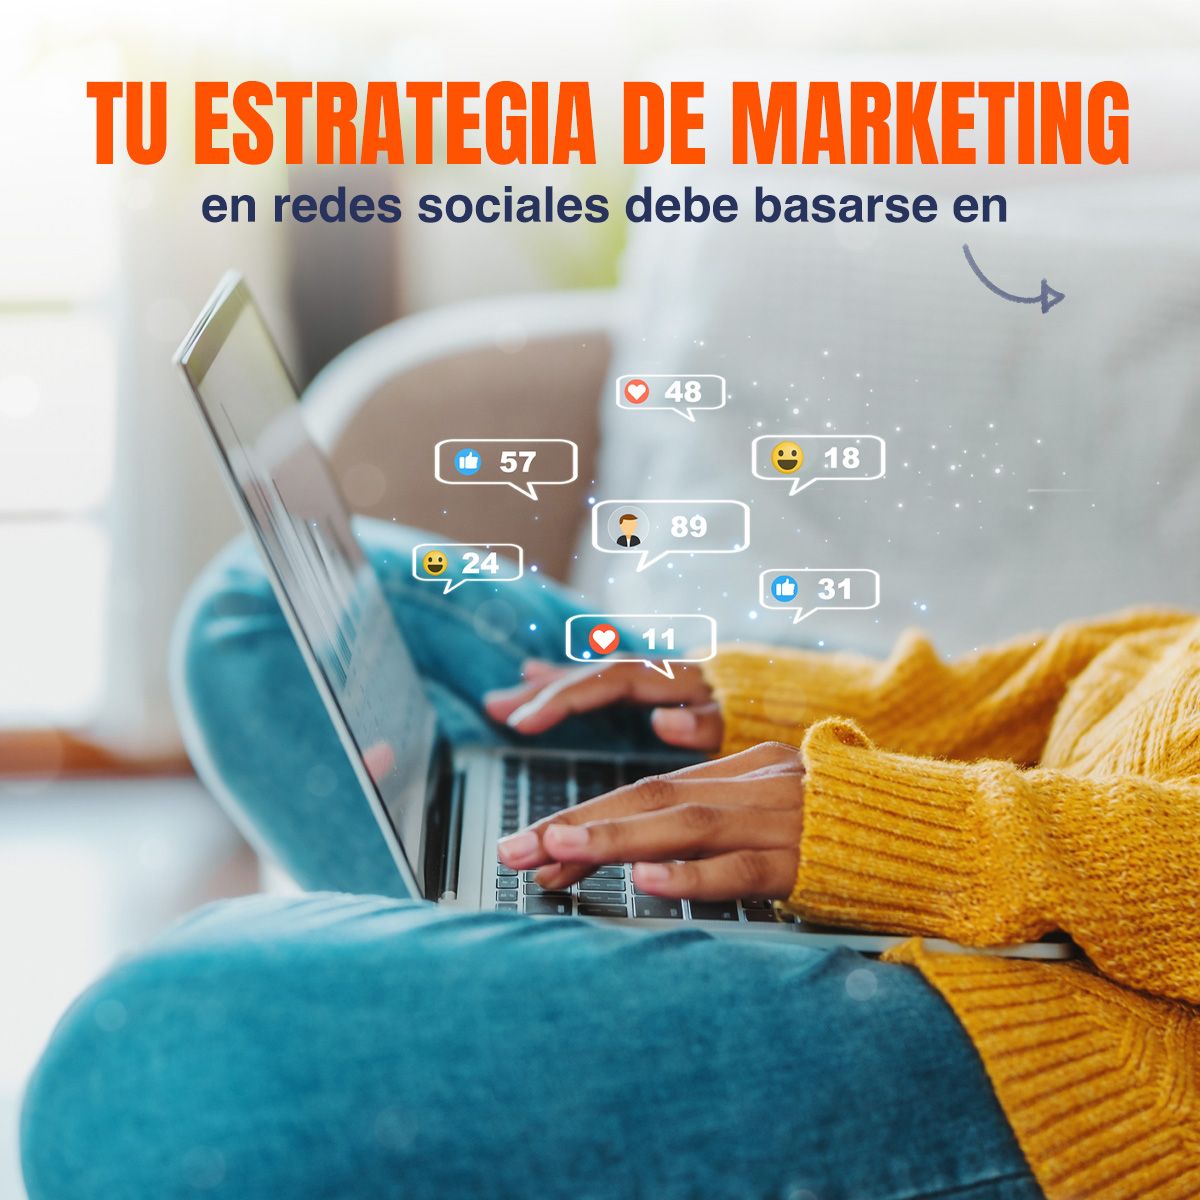 CARRUSEL: ARTE 1: Tu estrategia de marketing en redes sociales debe basarse en